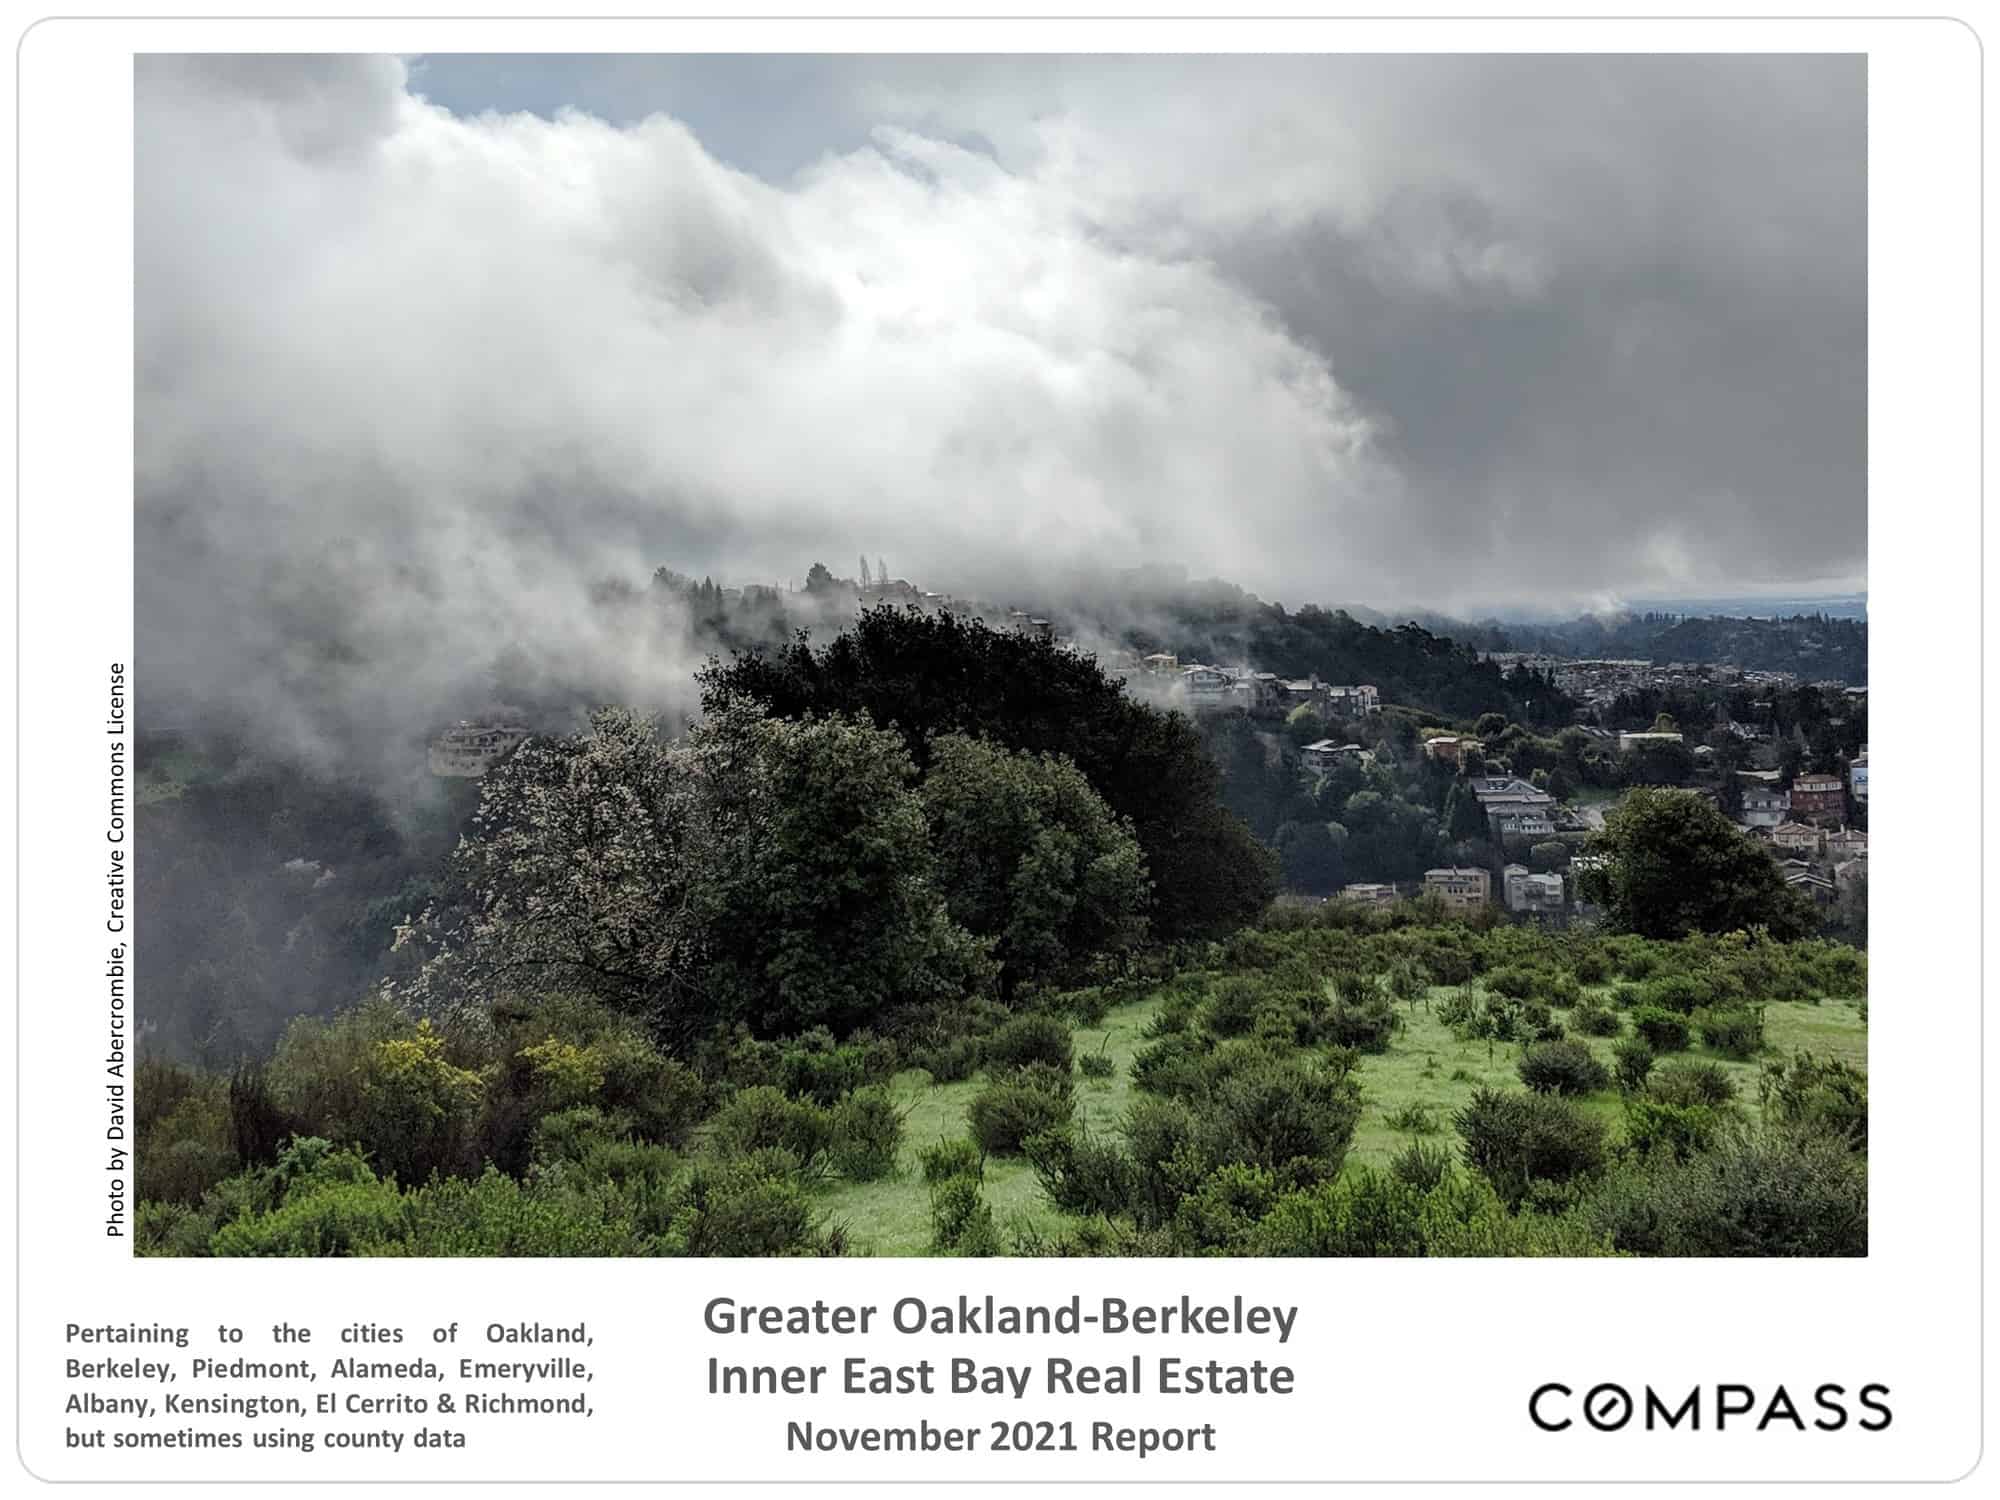 East Bay November 2021 Real Estate Market Report